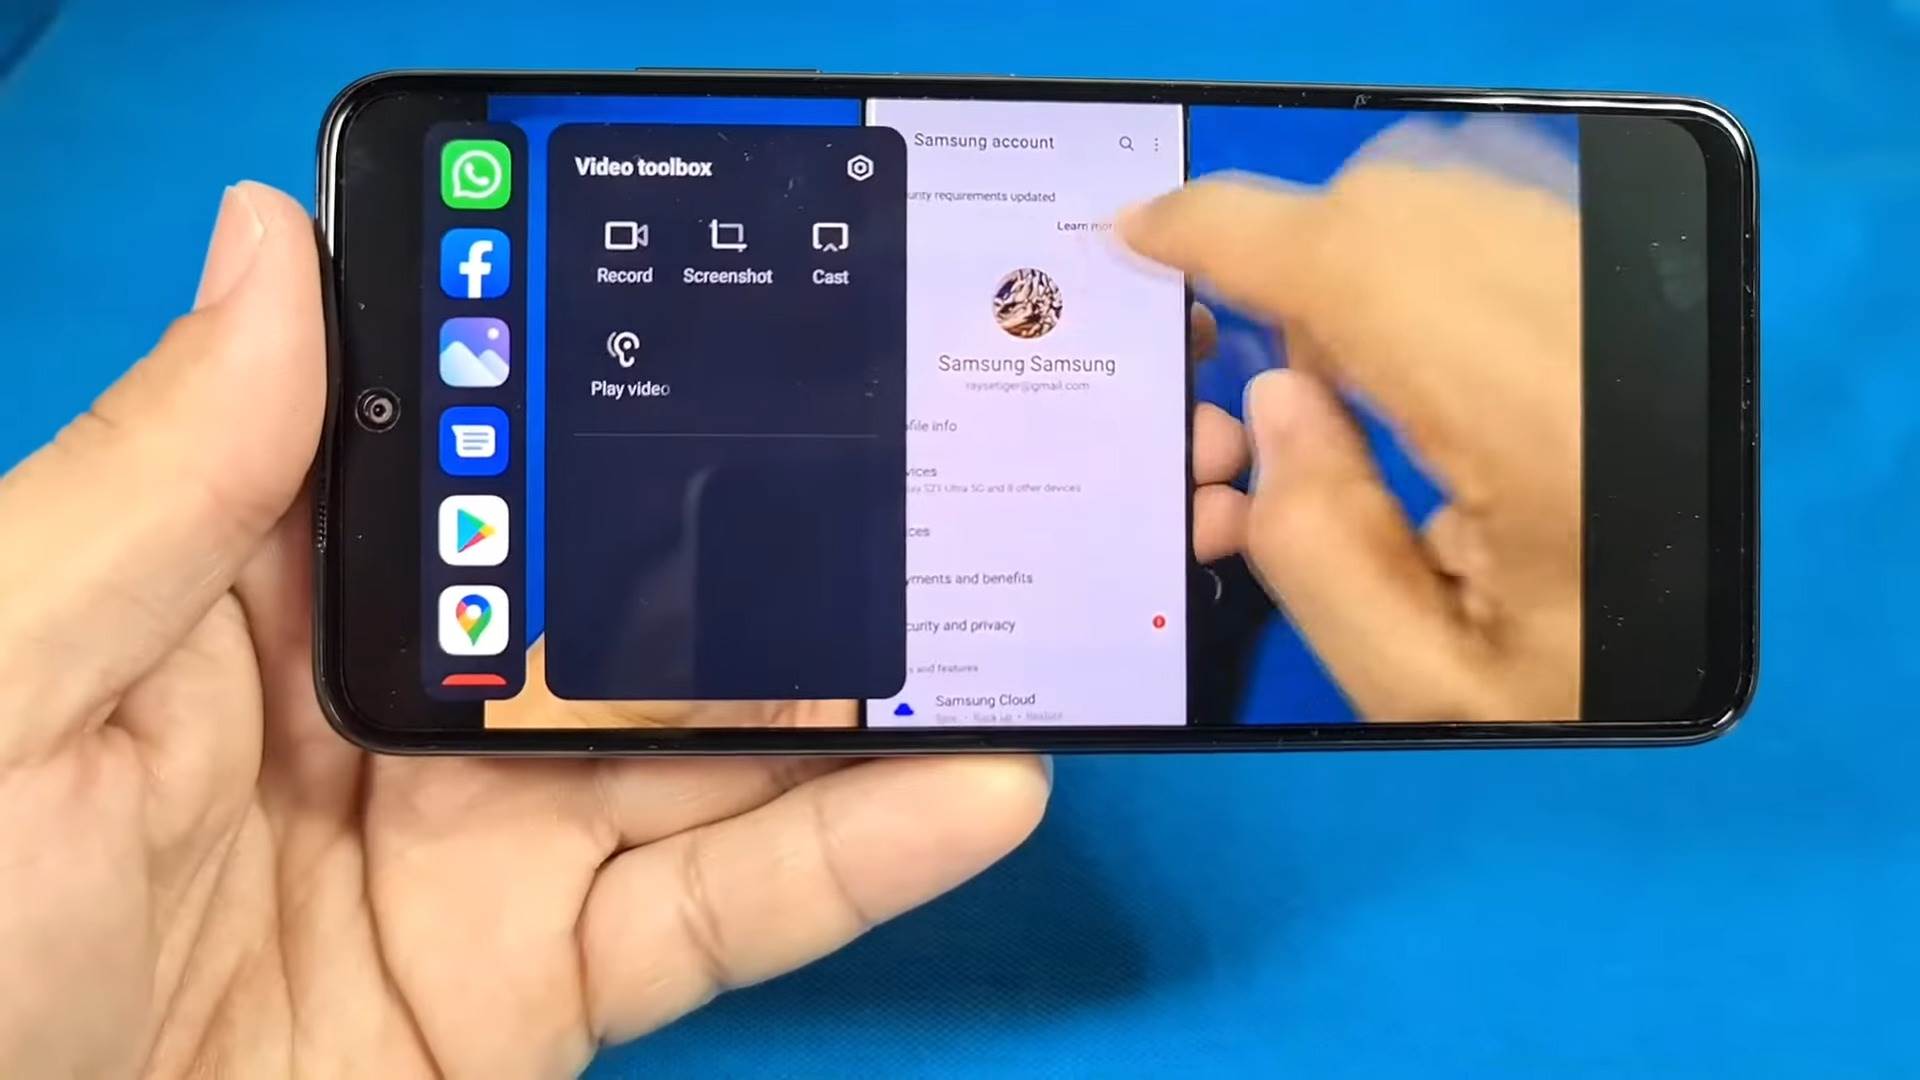  Xiaomi Video Toolbox 